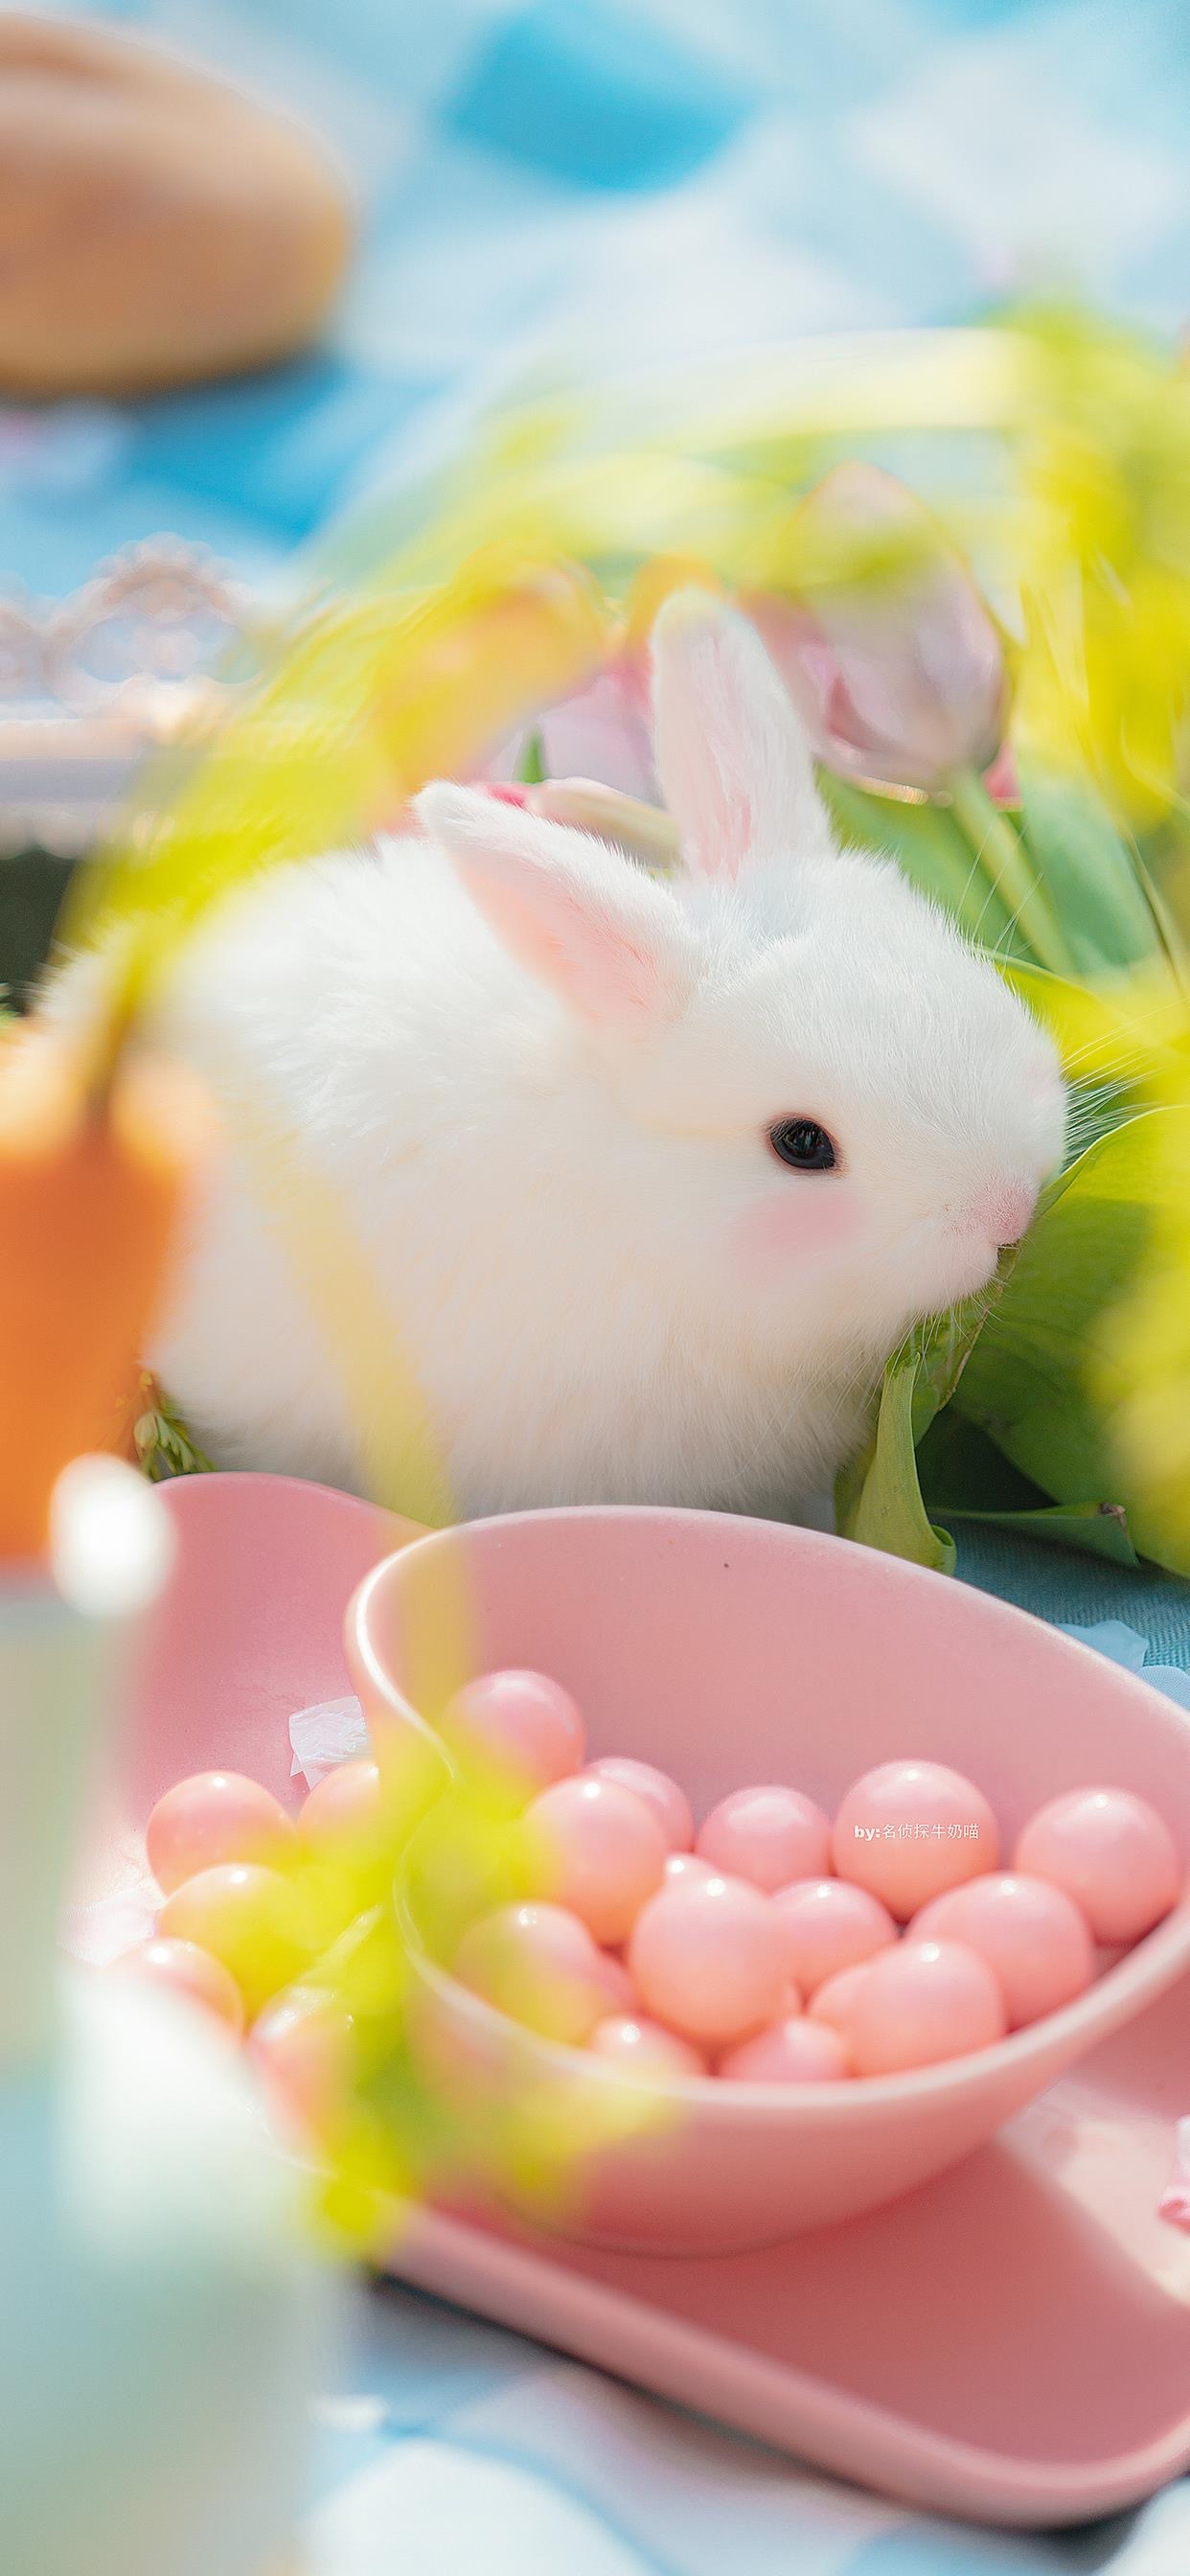 超级可爱小兔子图源:名侦探牛奶喵